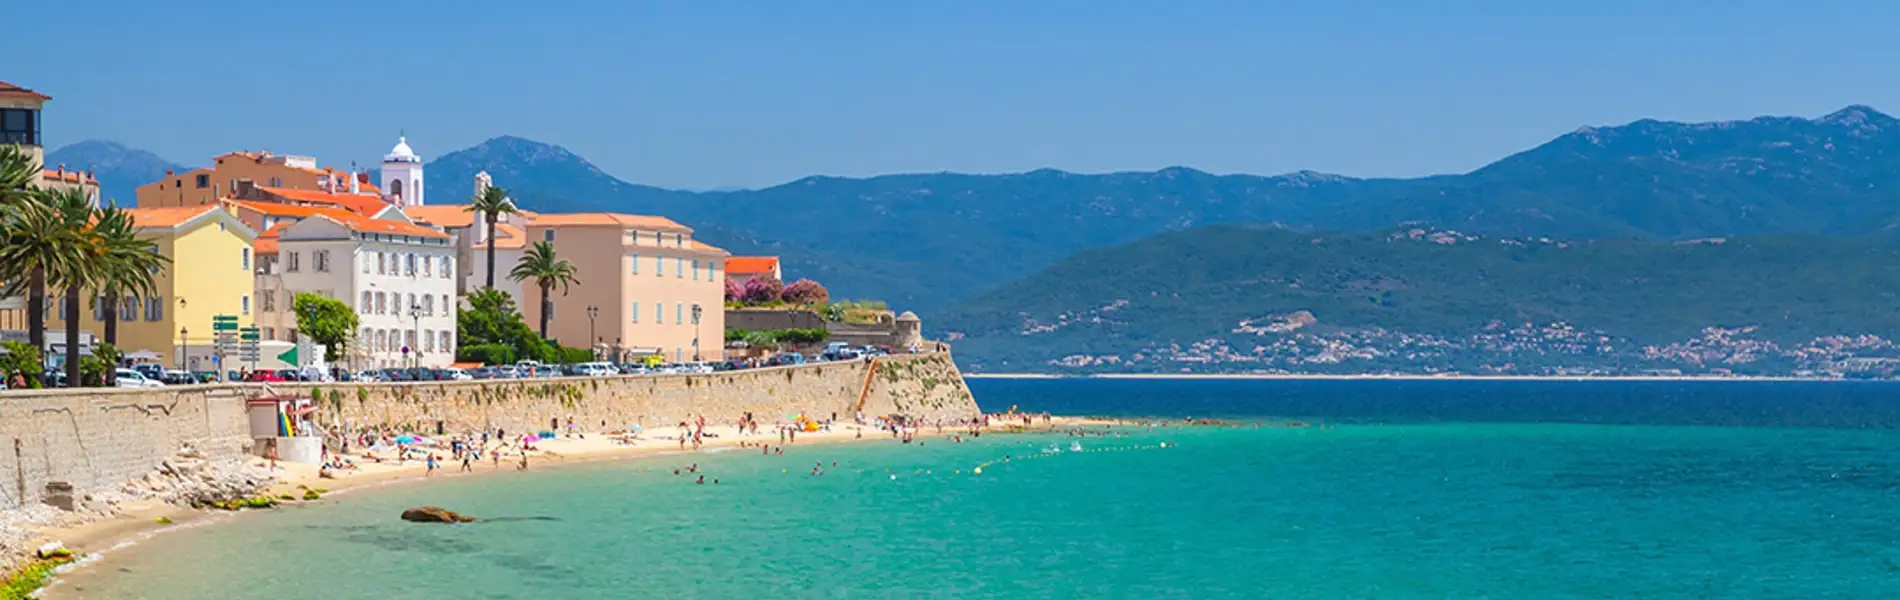 Ajaccio, Corsica (France)